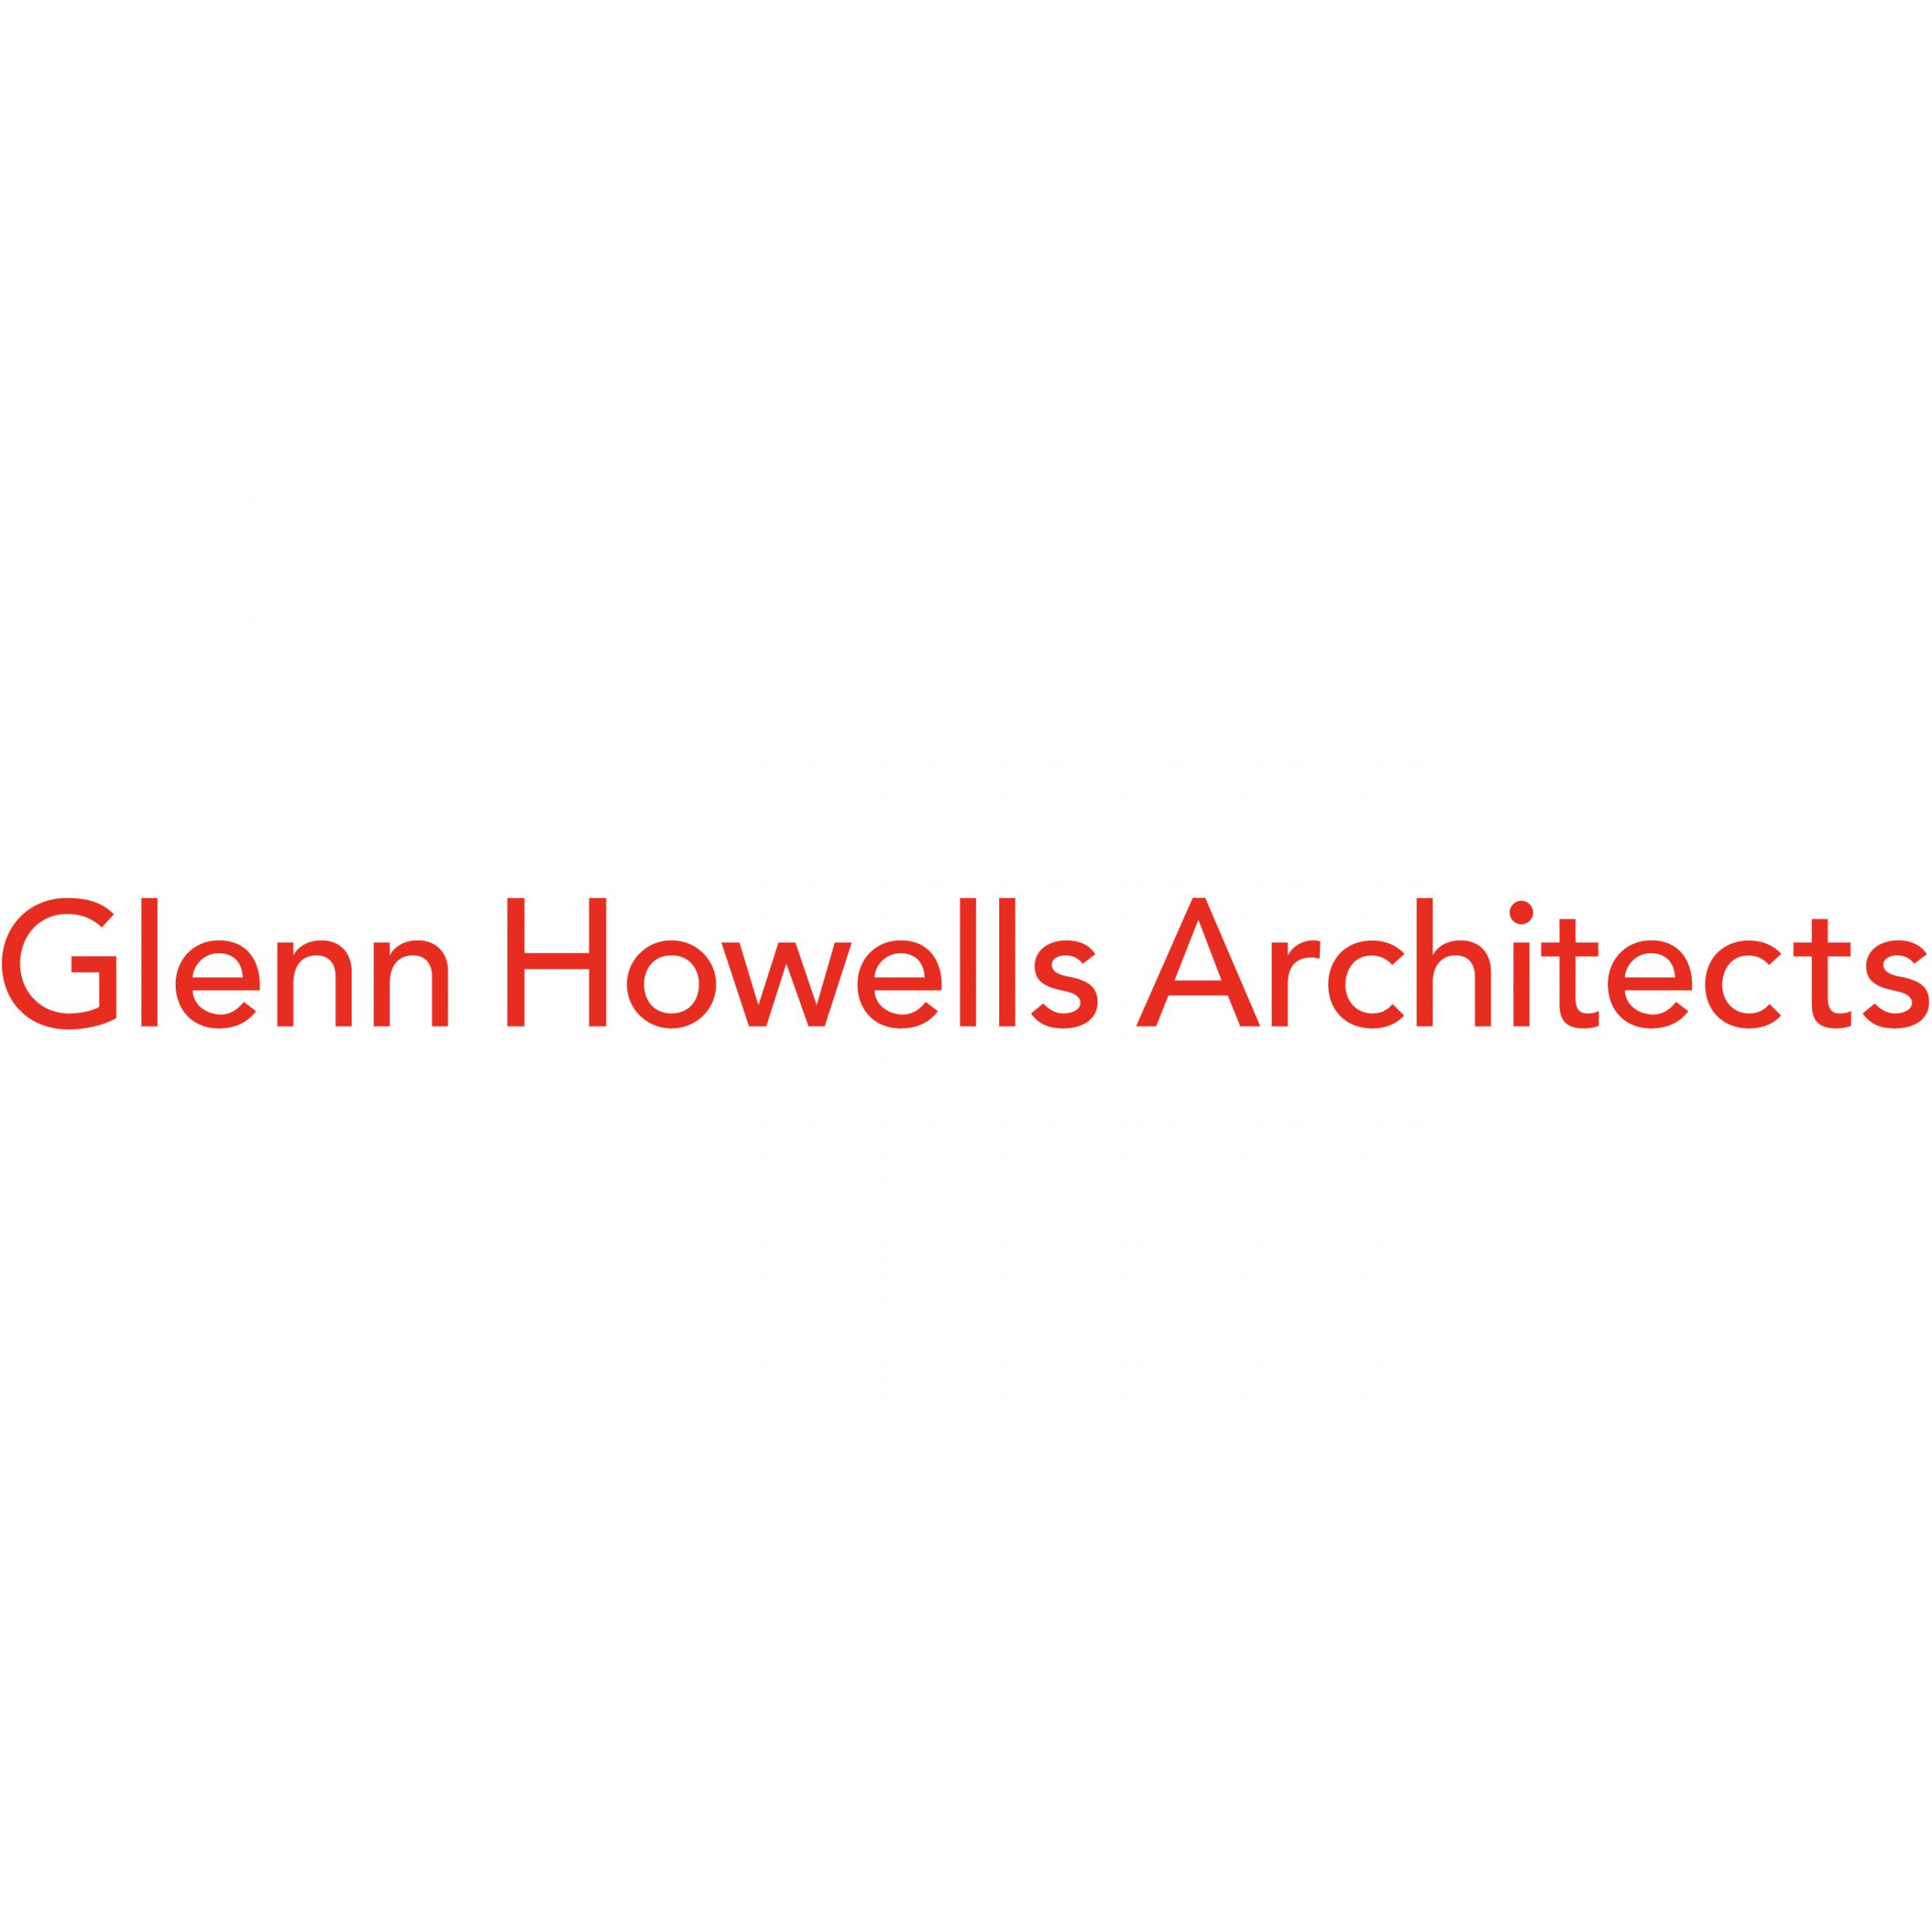 Glen Howells